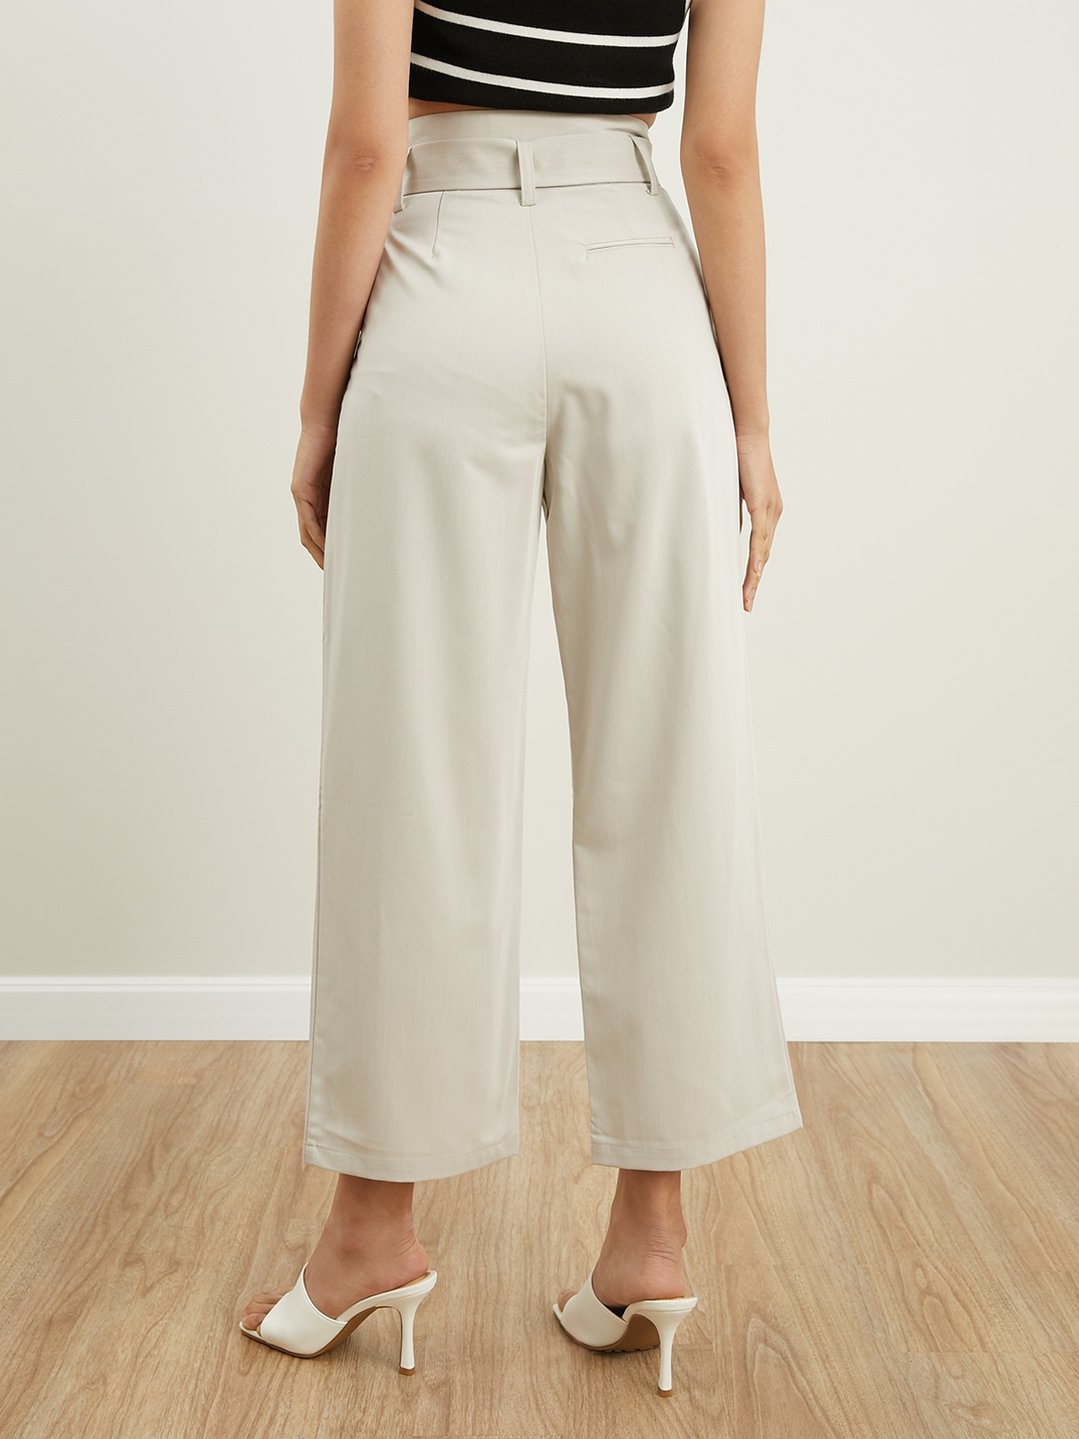 High Waisted Pants - Beige - Pomelo Fashion